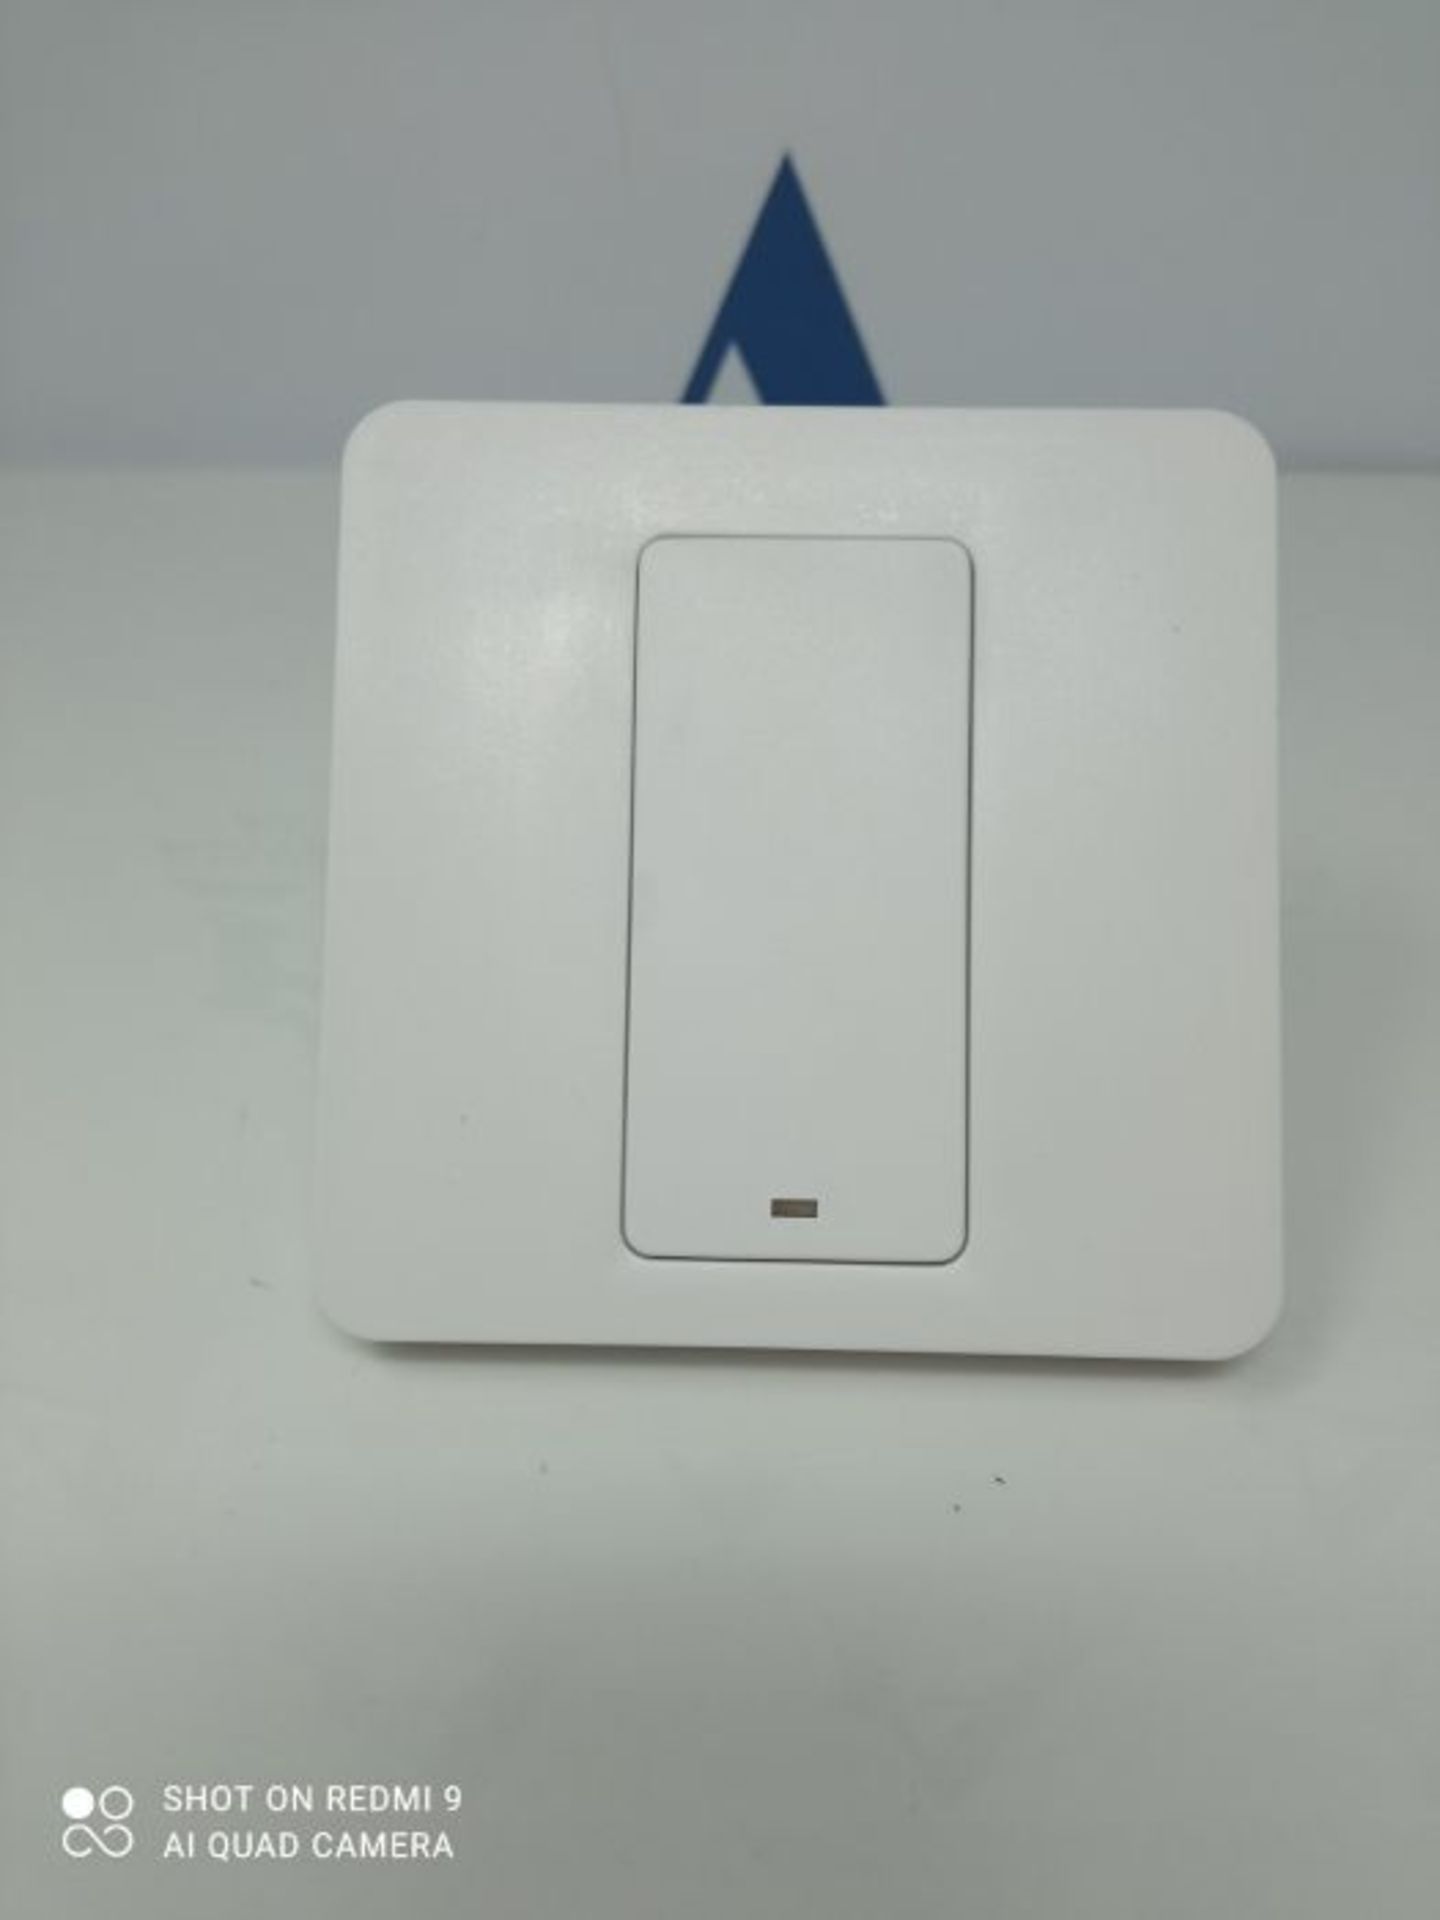 Interrupteur Connecté (FIL NEUTRE REQUIS), meross Interrupteur Intelligent WiFi Compa - Image 2 of 2